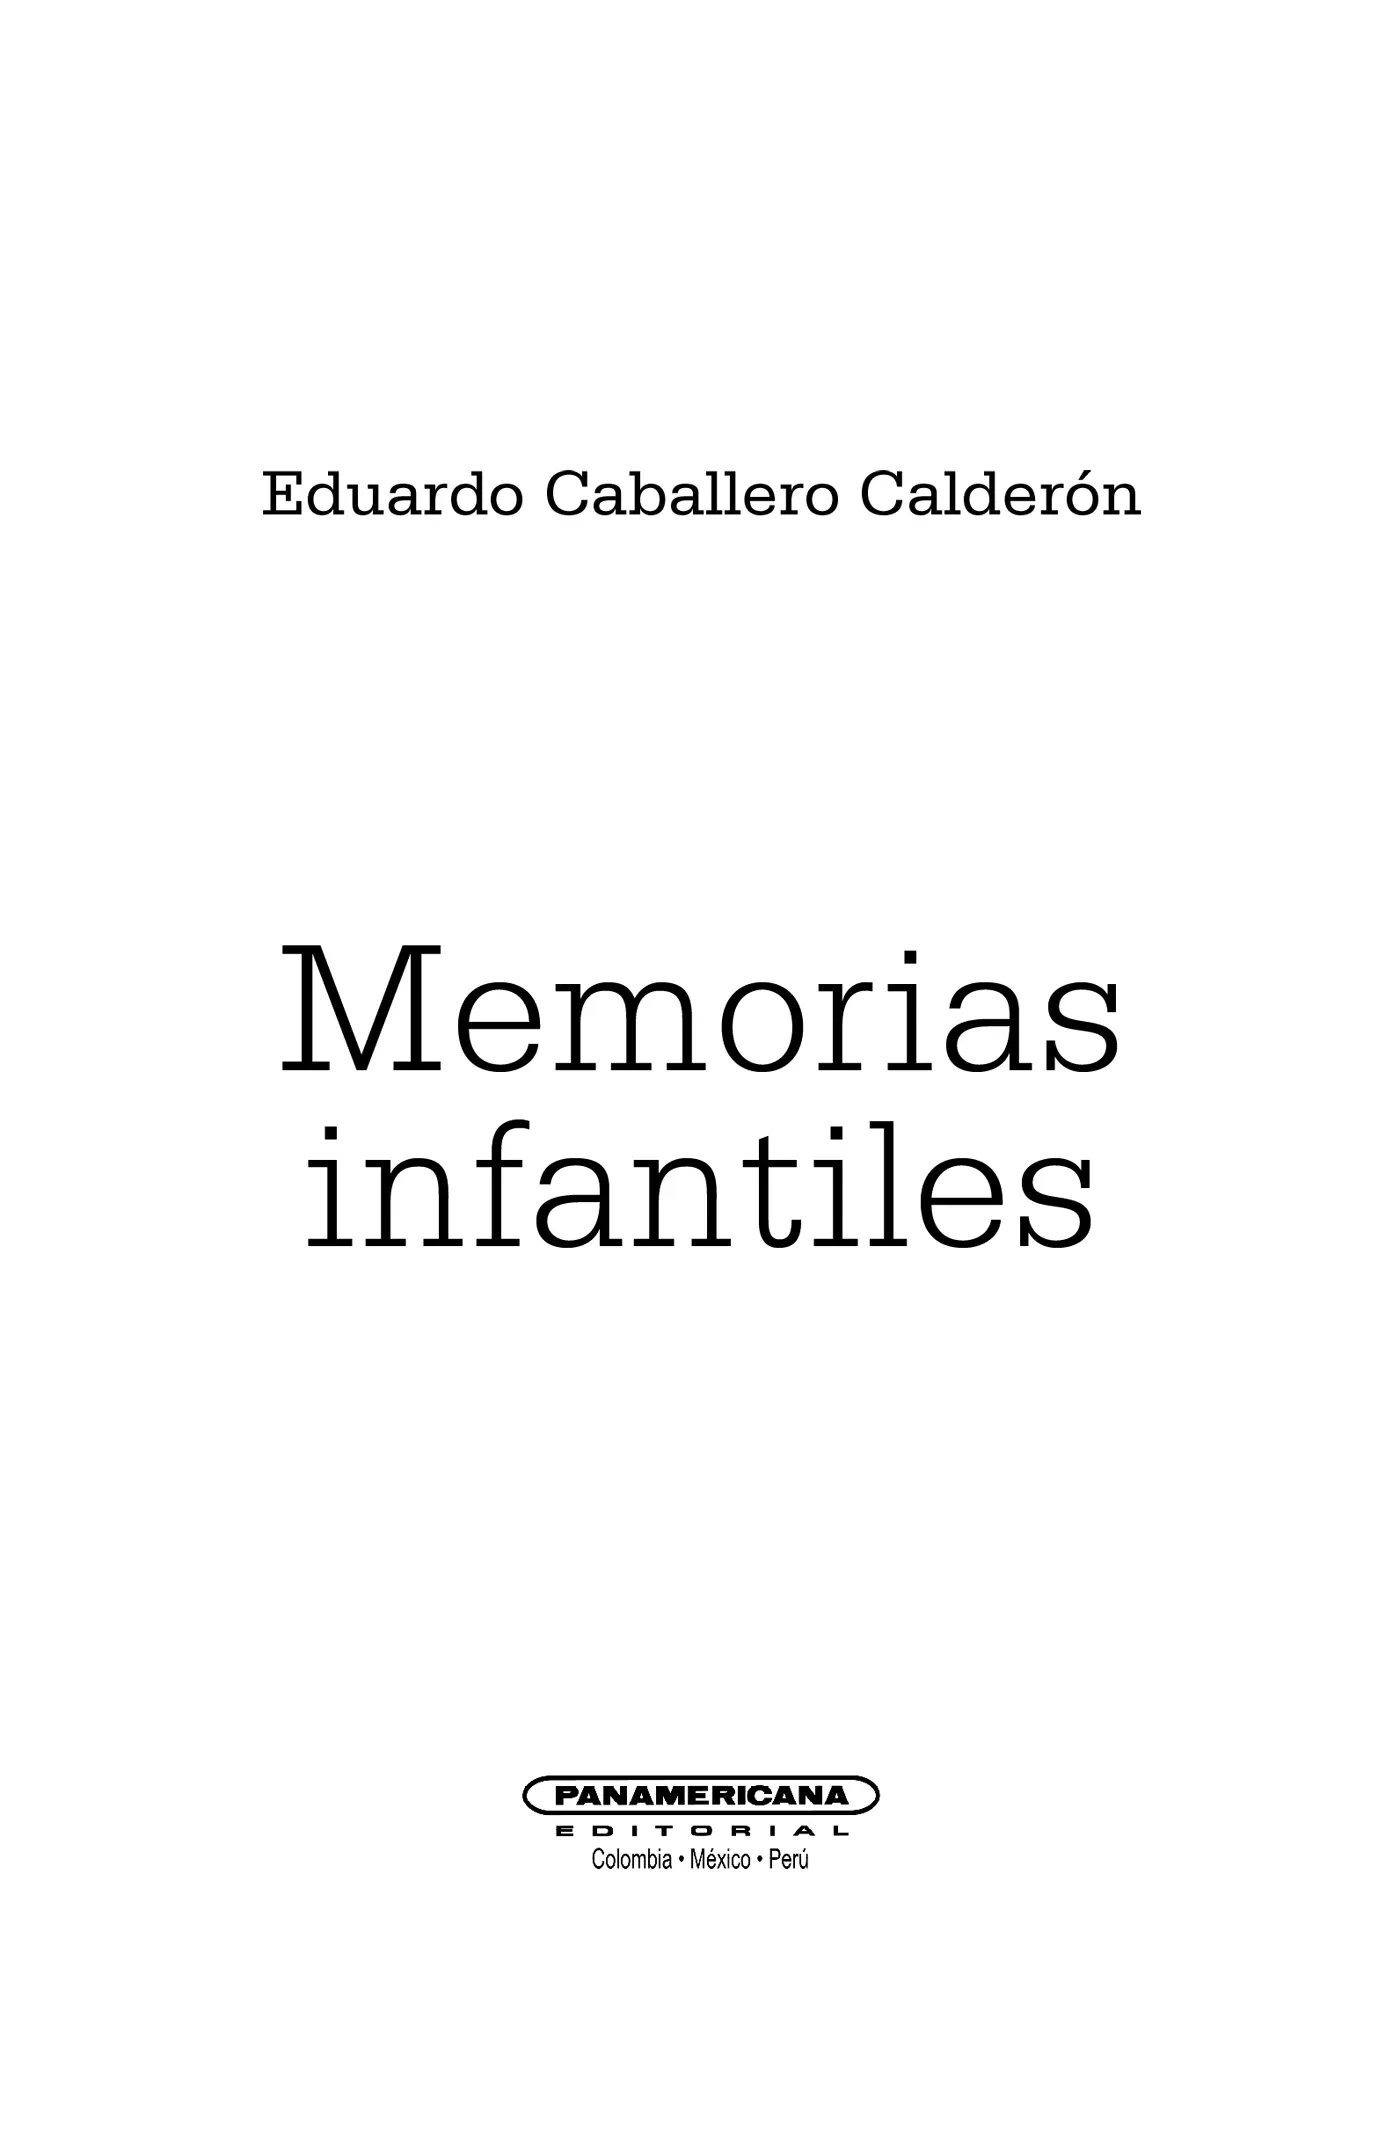 Presentación Hace cien años Eduardo Caballero Calderón se queja en este libro - фото 2